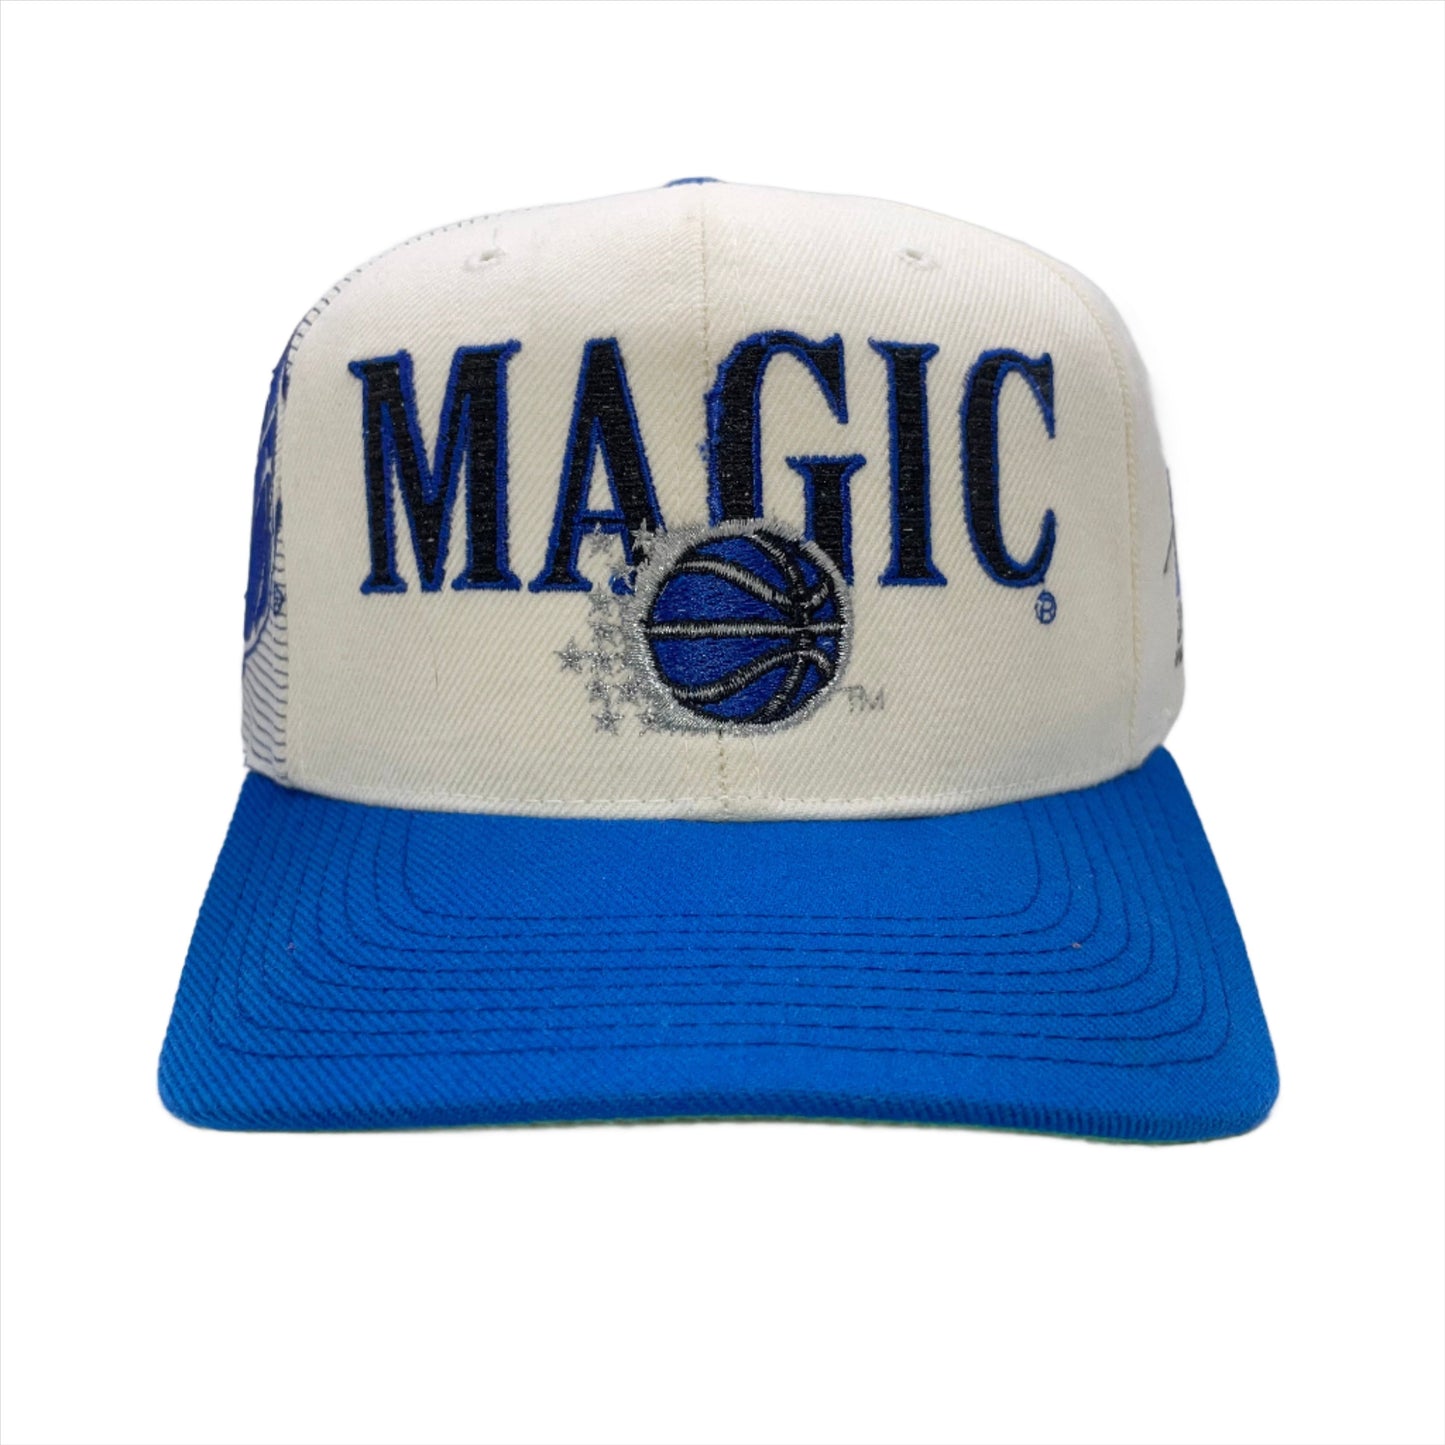 Vintage Orlando Magic SPORTS SPECIALTIES "Laser" hat